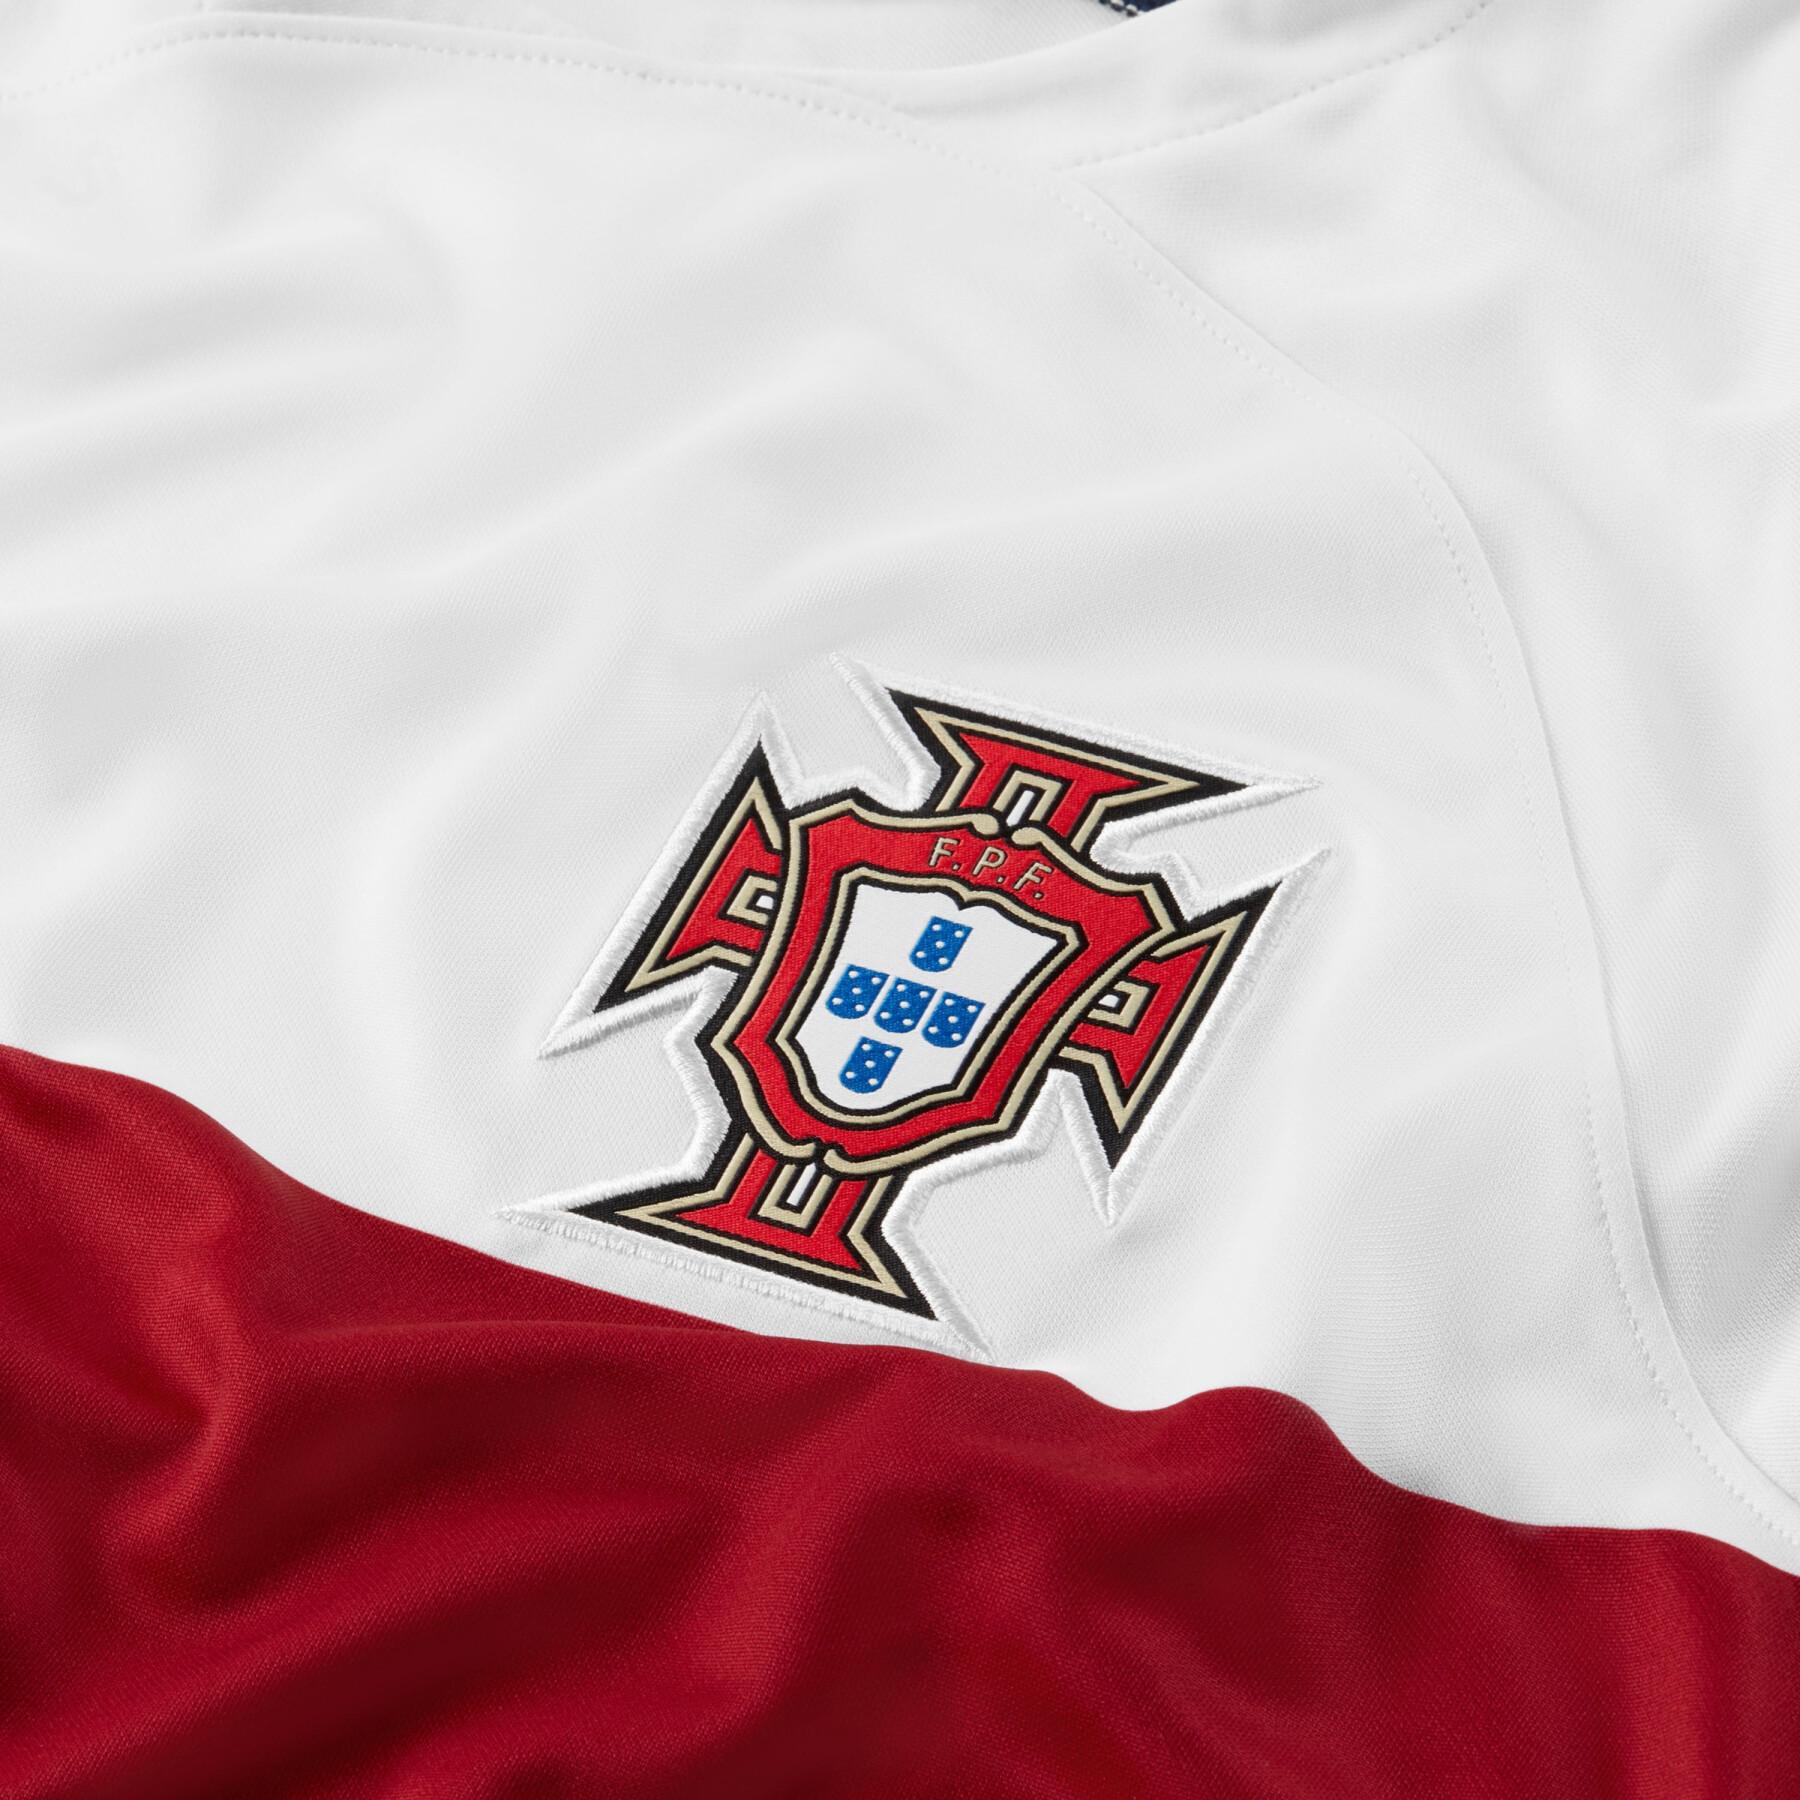 Maglia da trasferta per i Mondiali 2022 Portugal